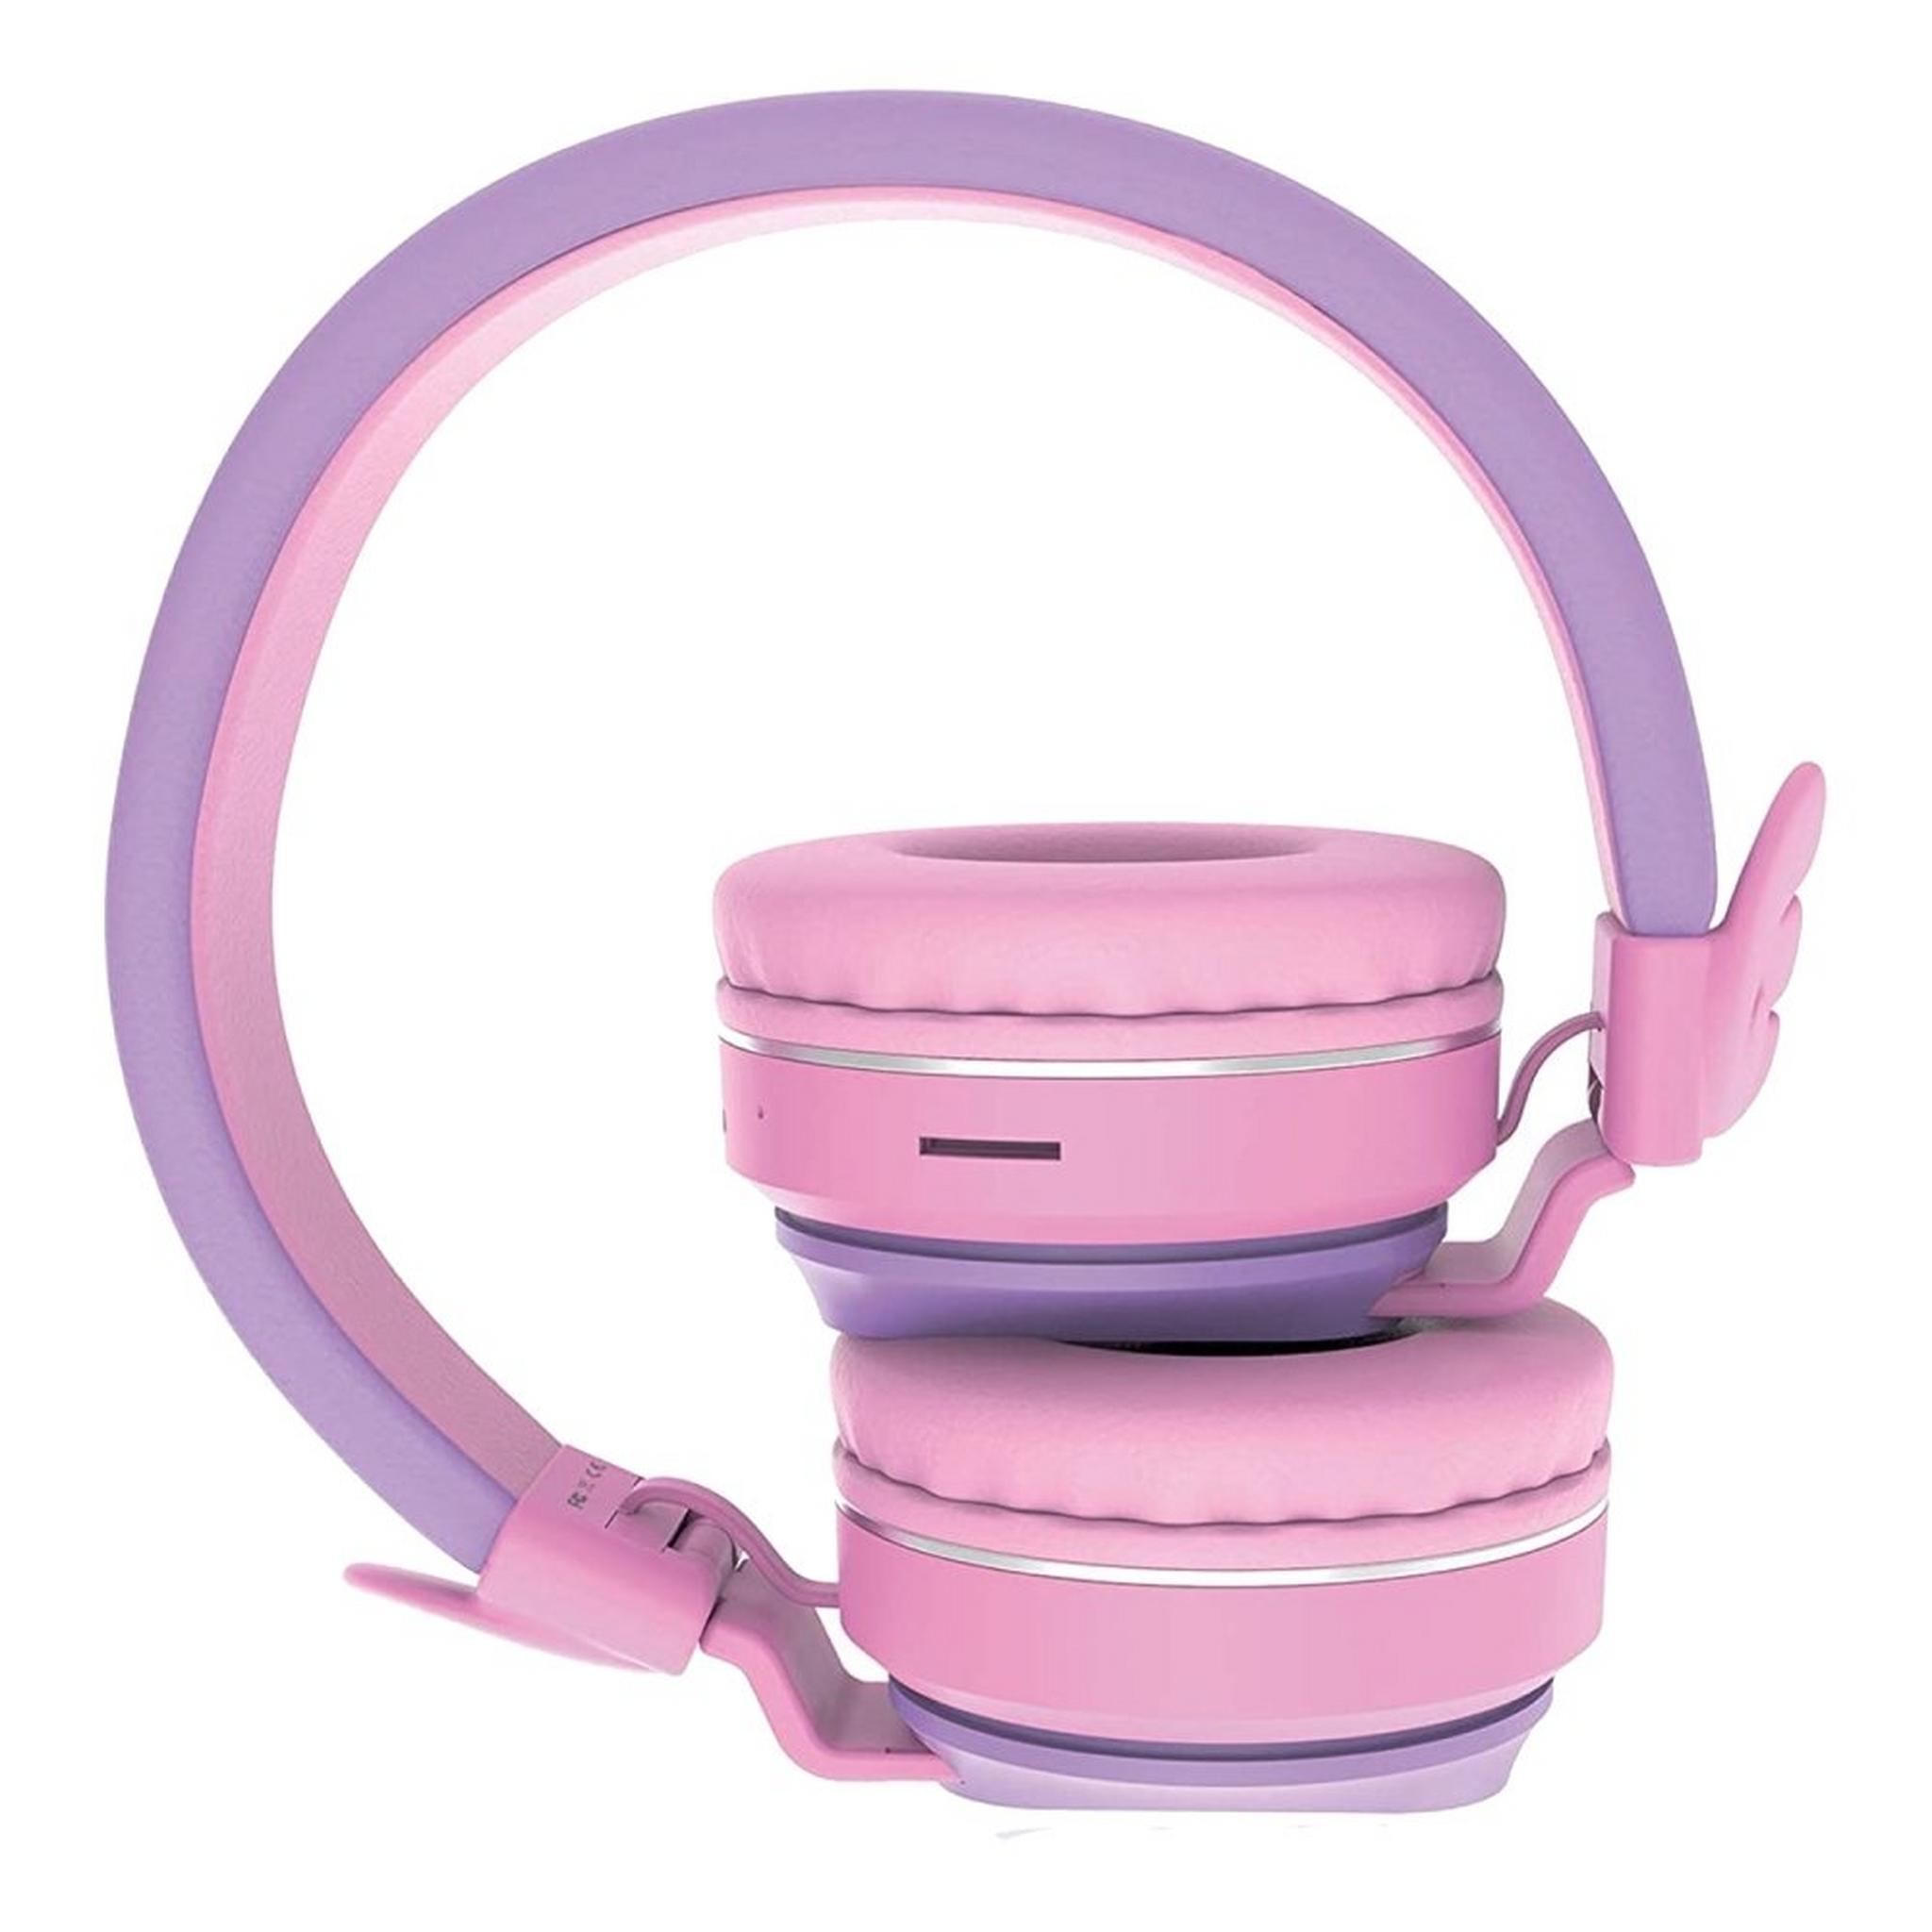 Riwbox Wings Kids Bluetooth Headphones - Purple/Pink